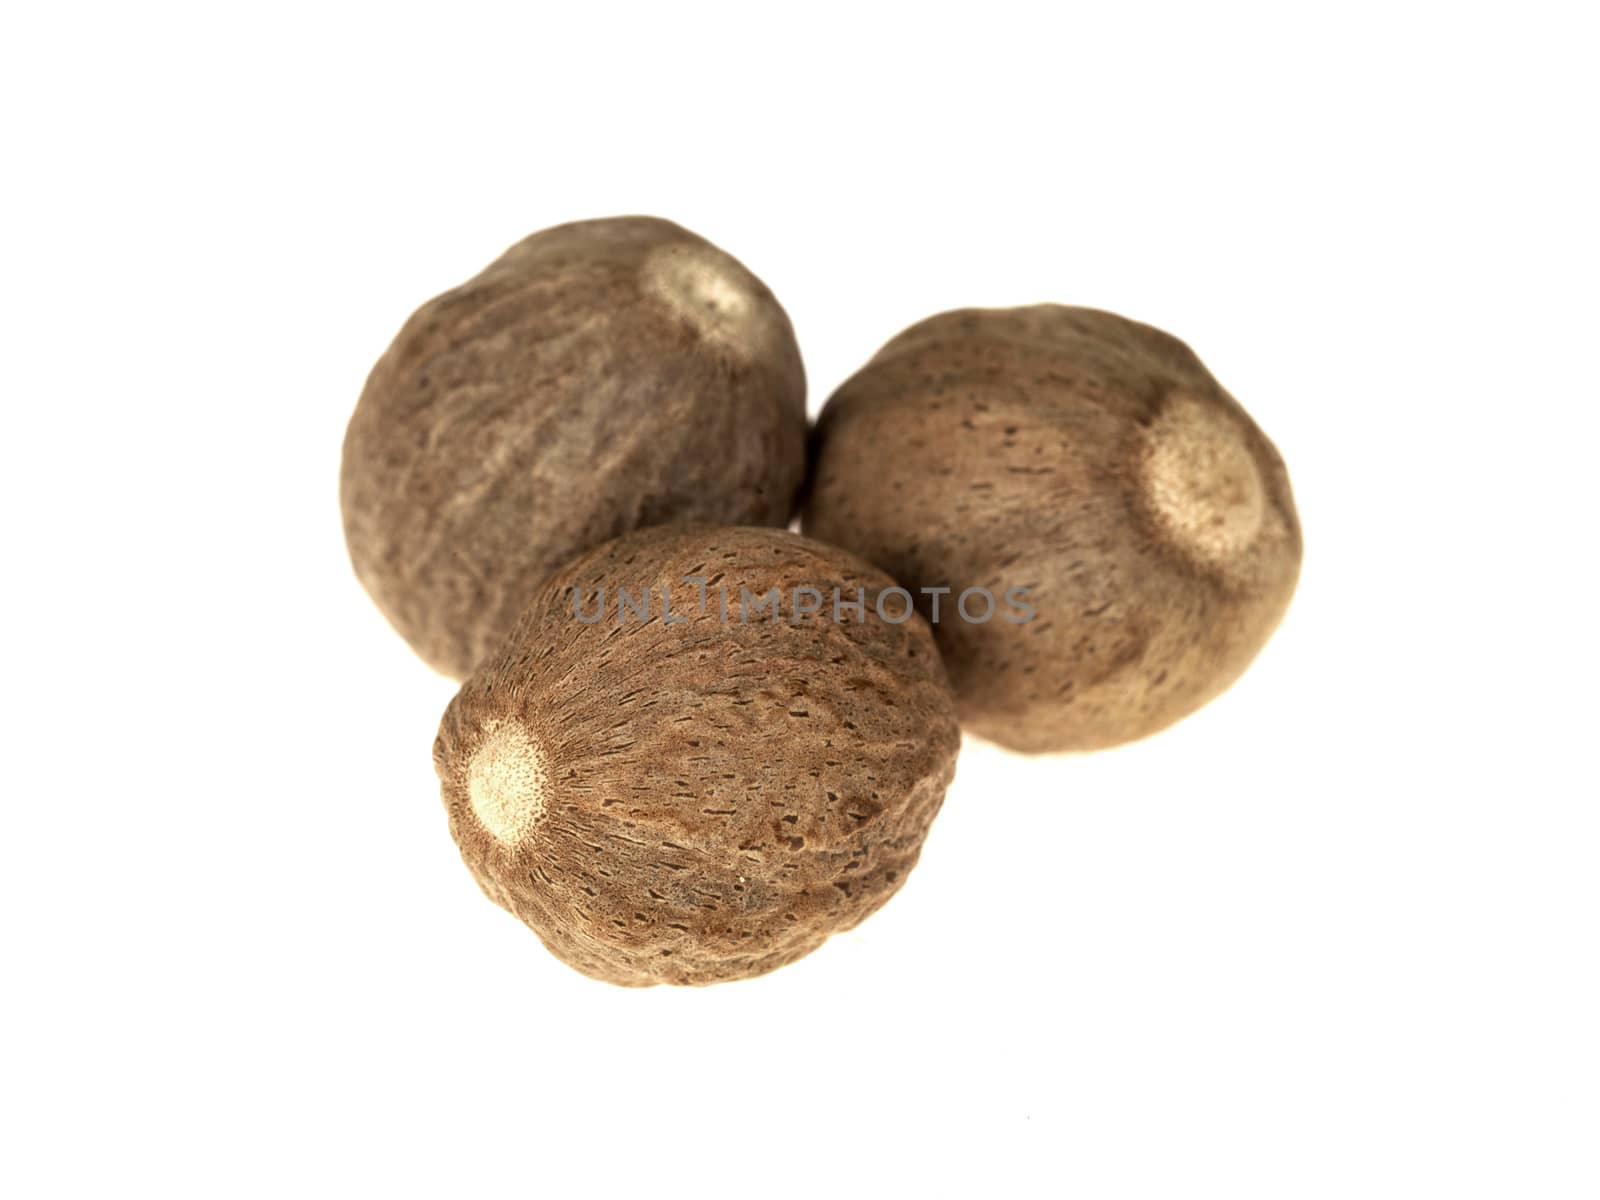 Whole Nutmeg by Whiteboxmedia